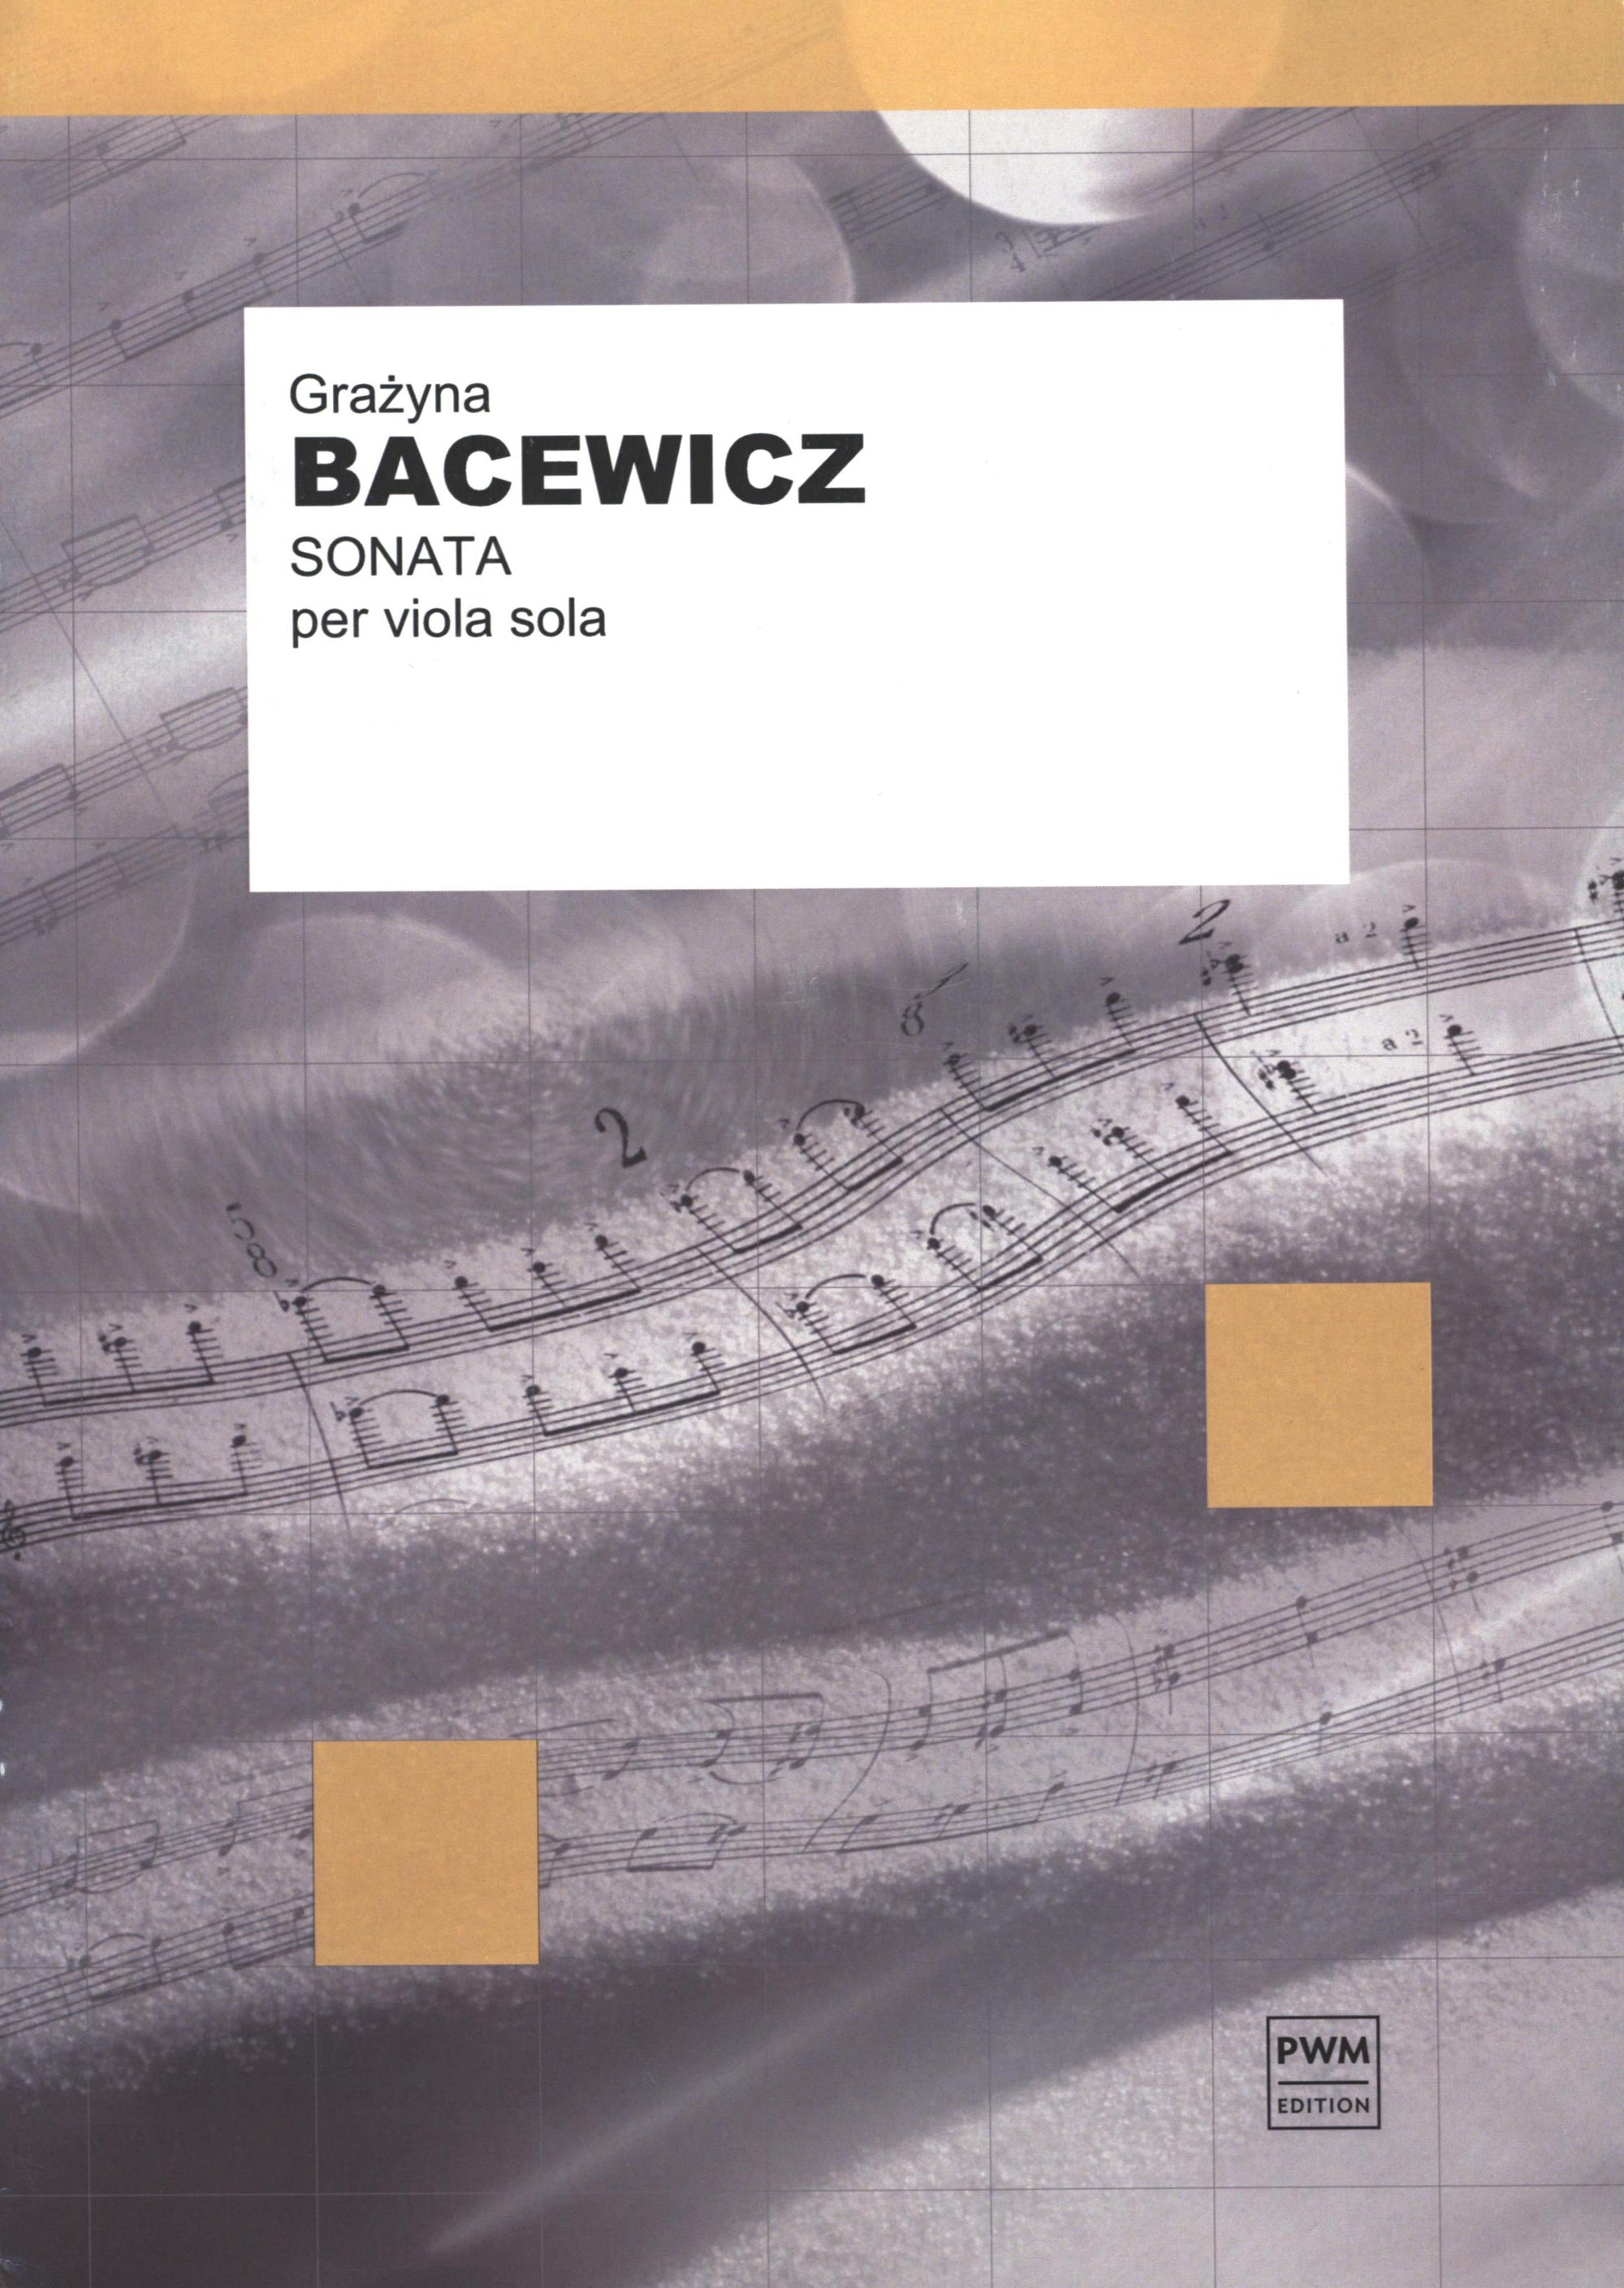 Bacewicz: Sonata for Solo Viola